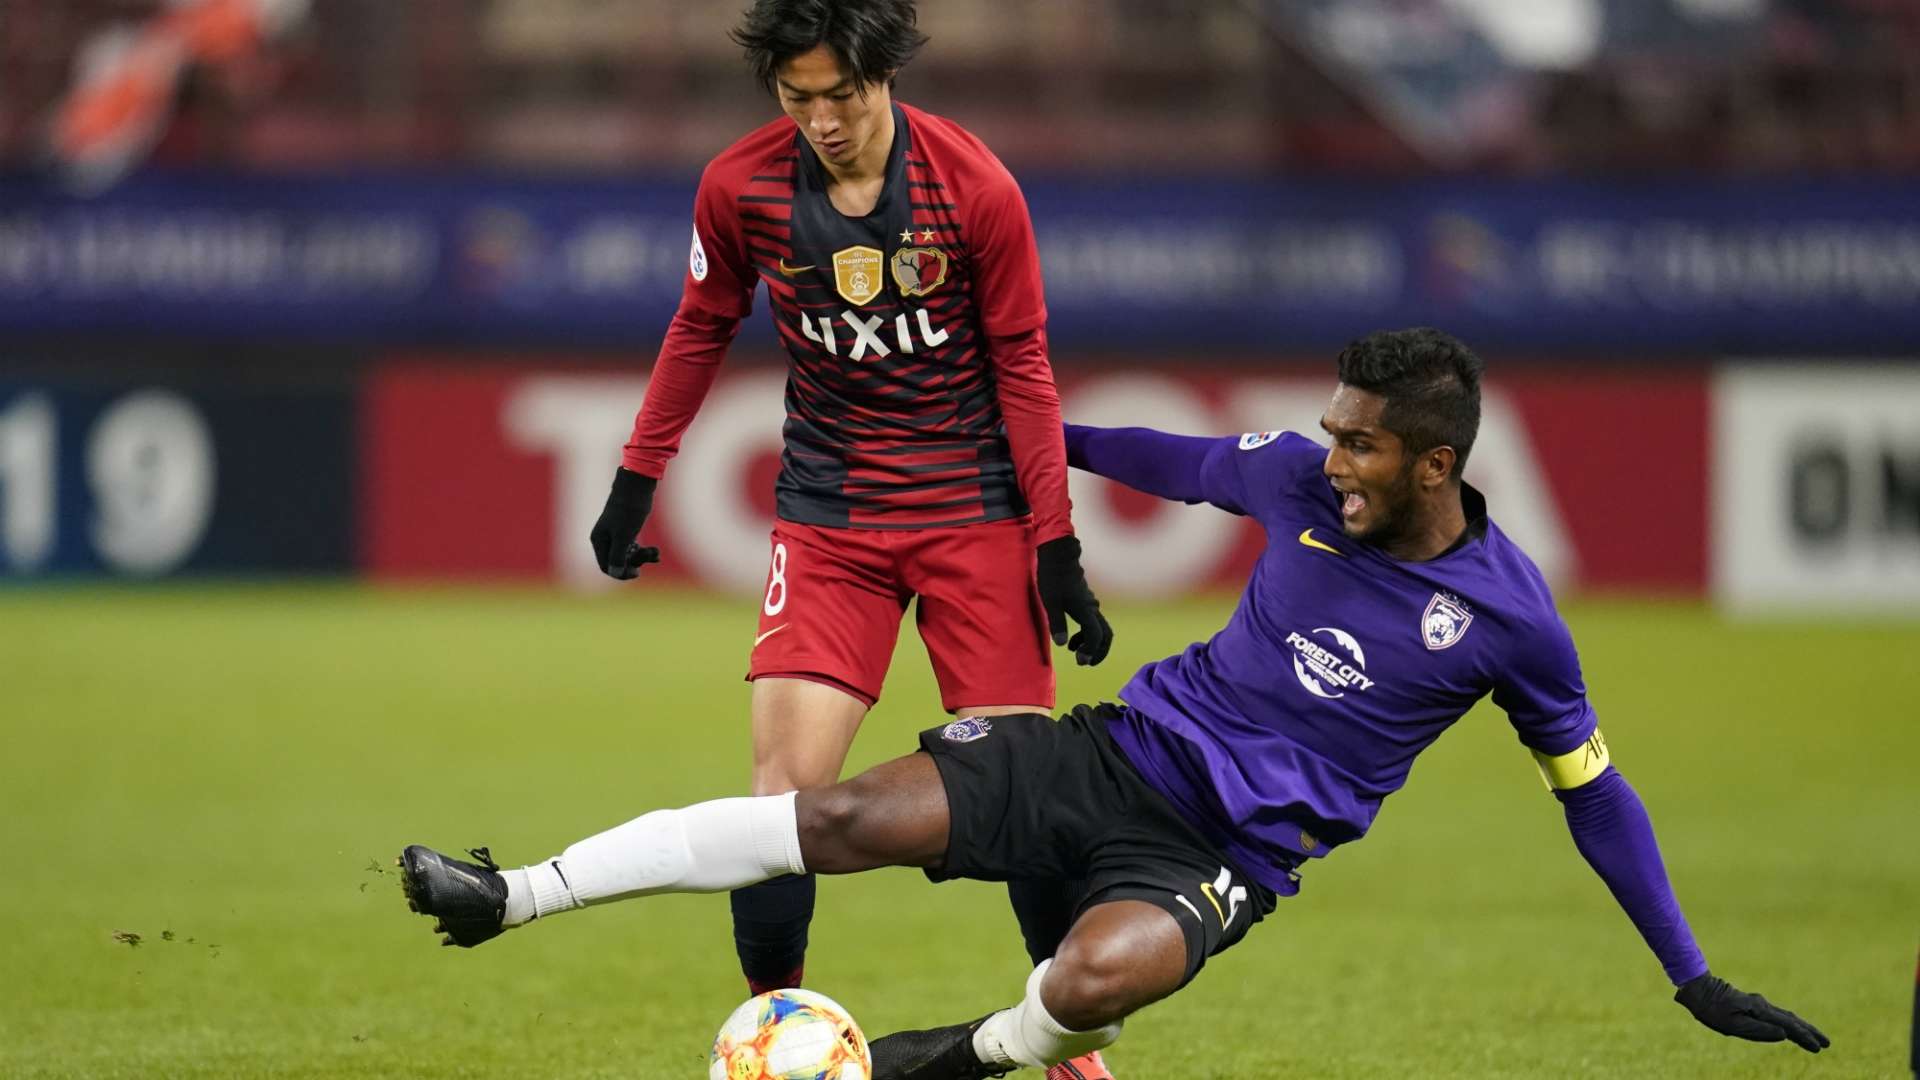 Hariss Harun, Kashima v Johor Darul Ta'zim, AFC Champions League, 5 Mar 2019